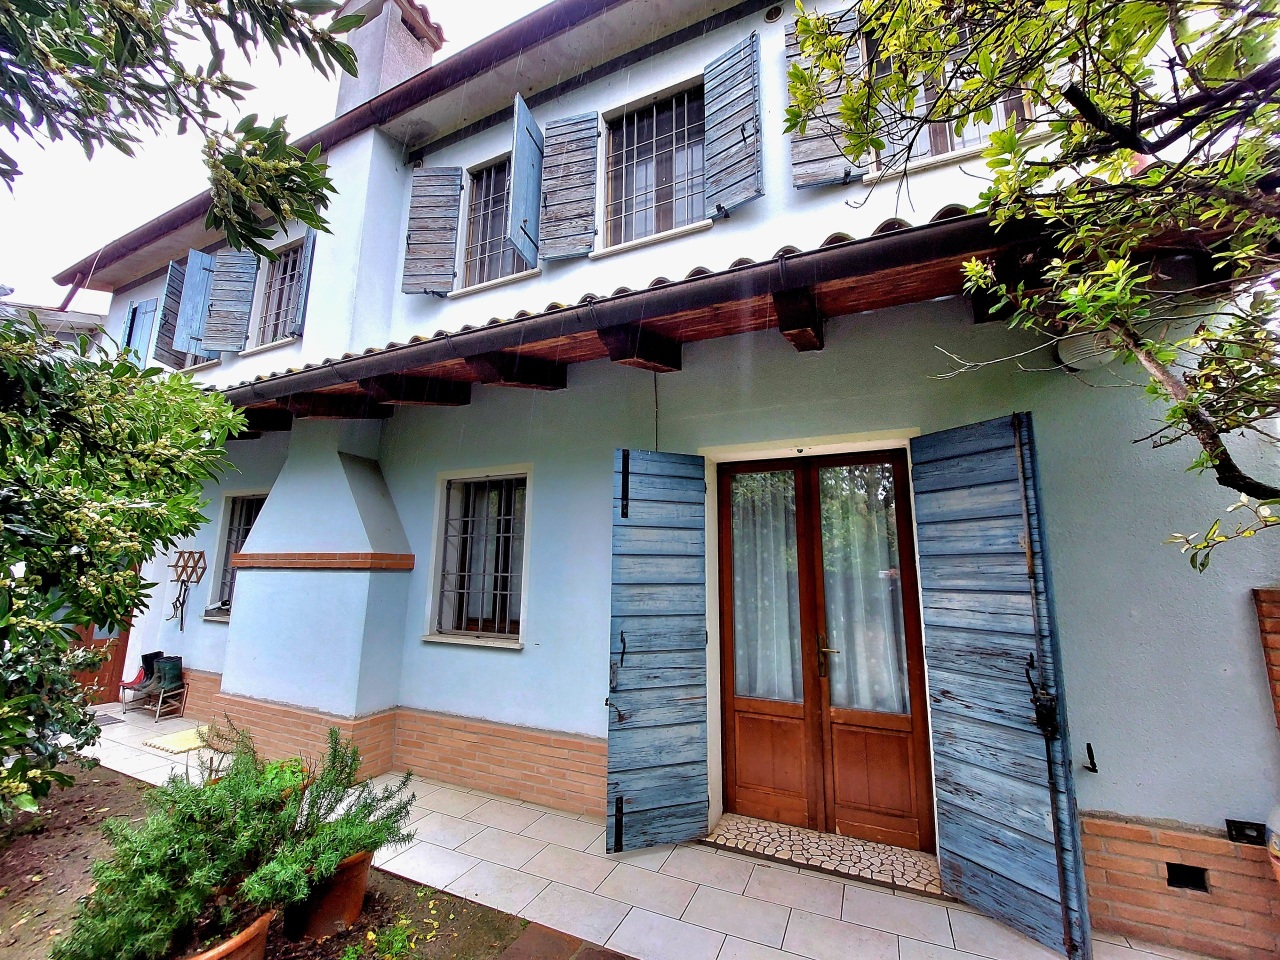 Villa in vendita a Vescovana, 8 locali, prezzo € 300.000 | PortaleAgenzieImmobiliari.it